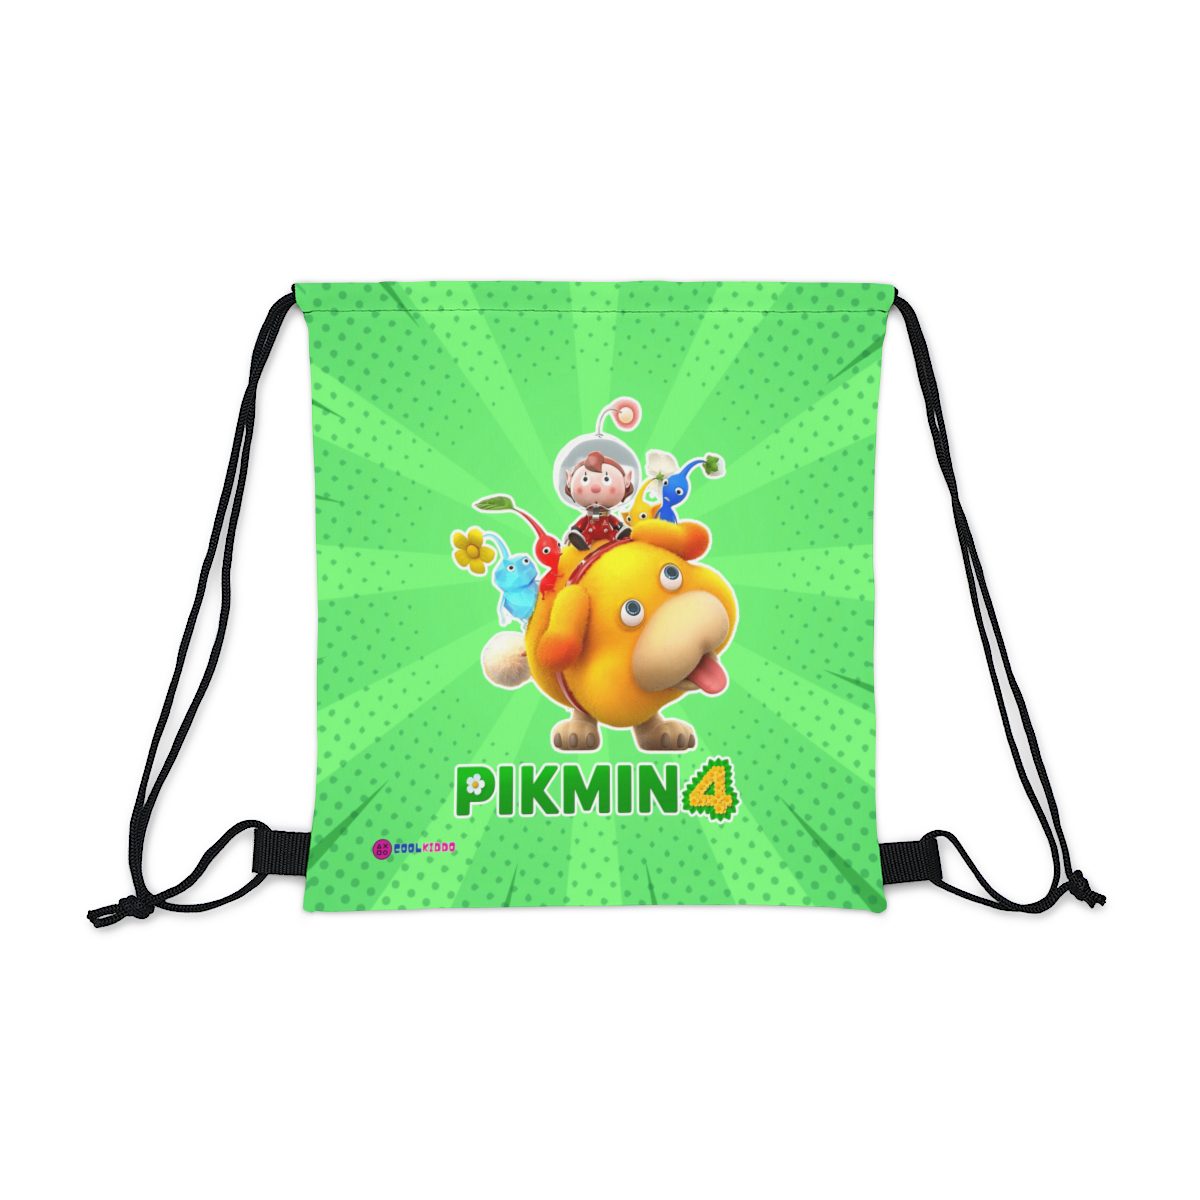 Nintendo PIKMIN 4 Video Game Outdoor Drawstring Bag Cool Kiddo 10